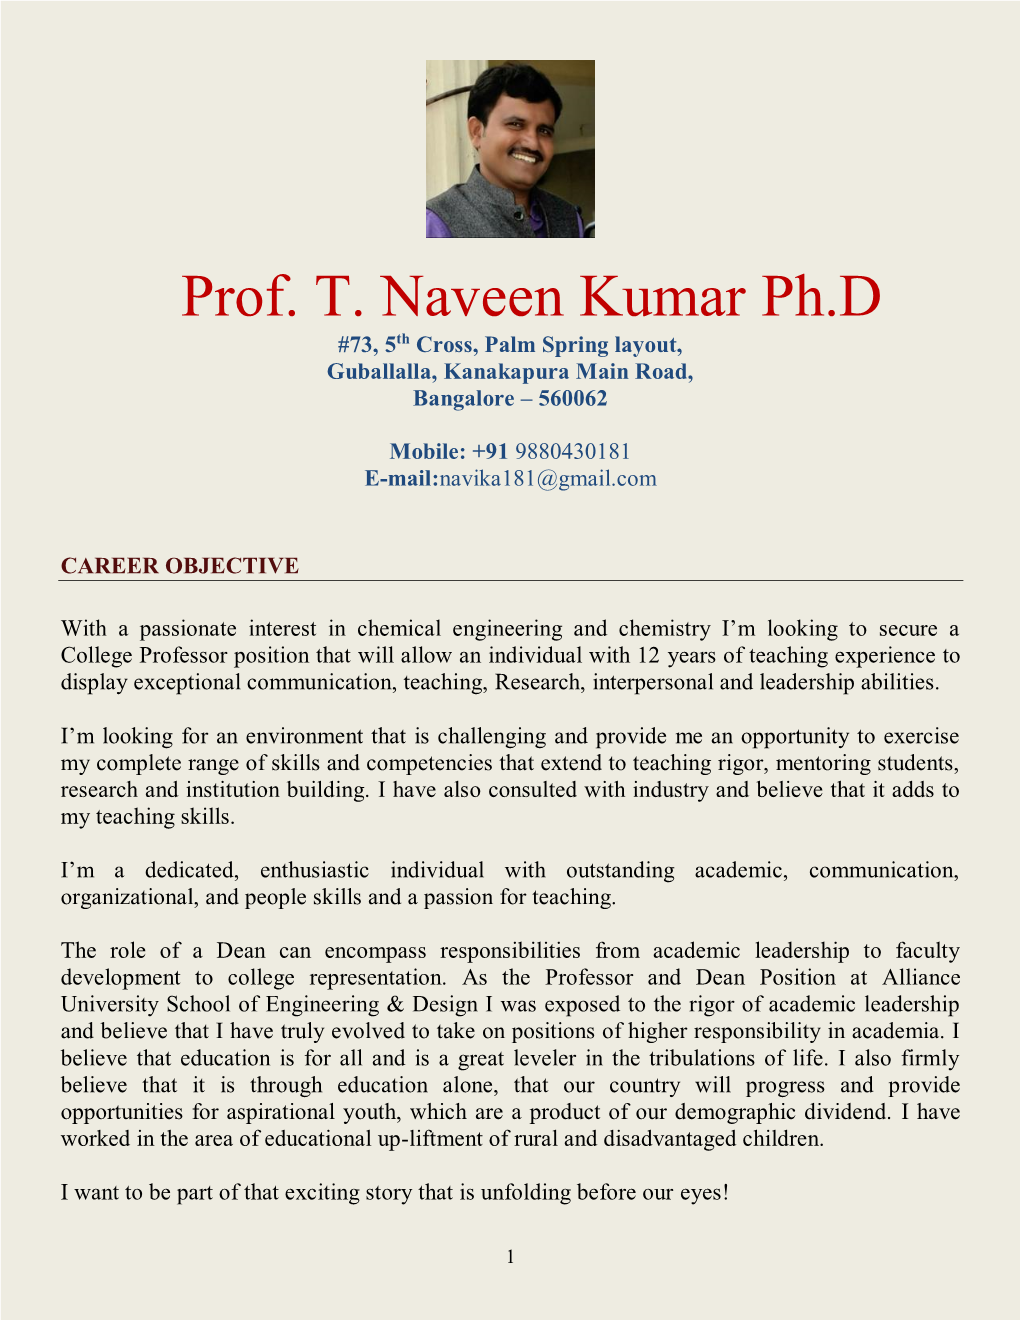 Prof. T. Naveen Kumar Ph.D #73, 5Th Cross, Palm Spring Layout, Guballalla, Kanakapura Main Road, Bangalore – 560062